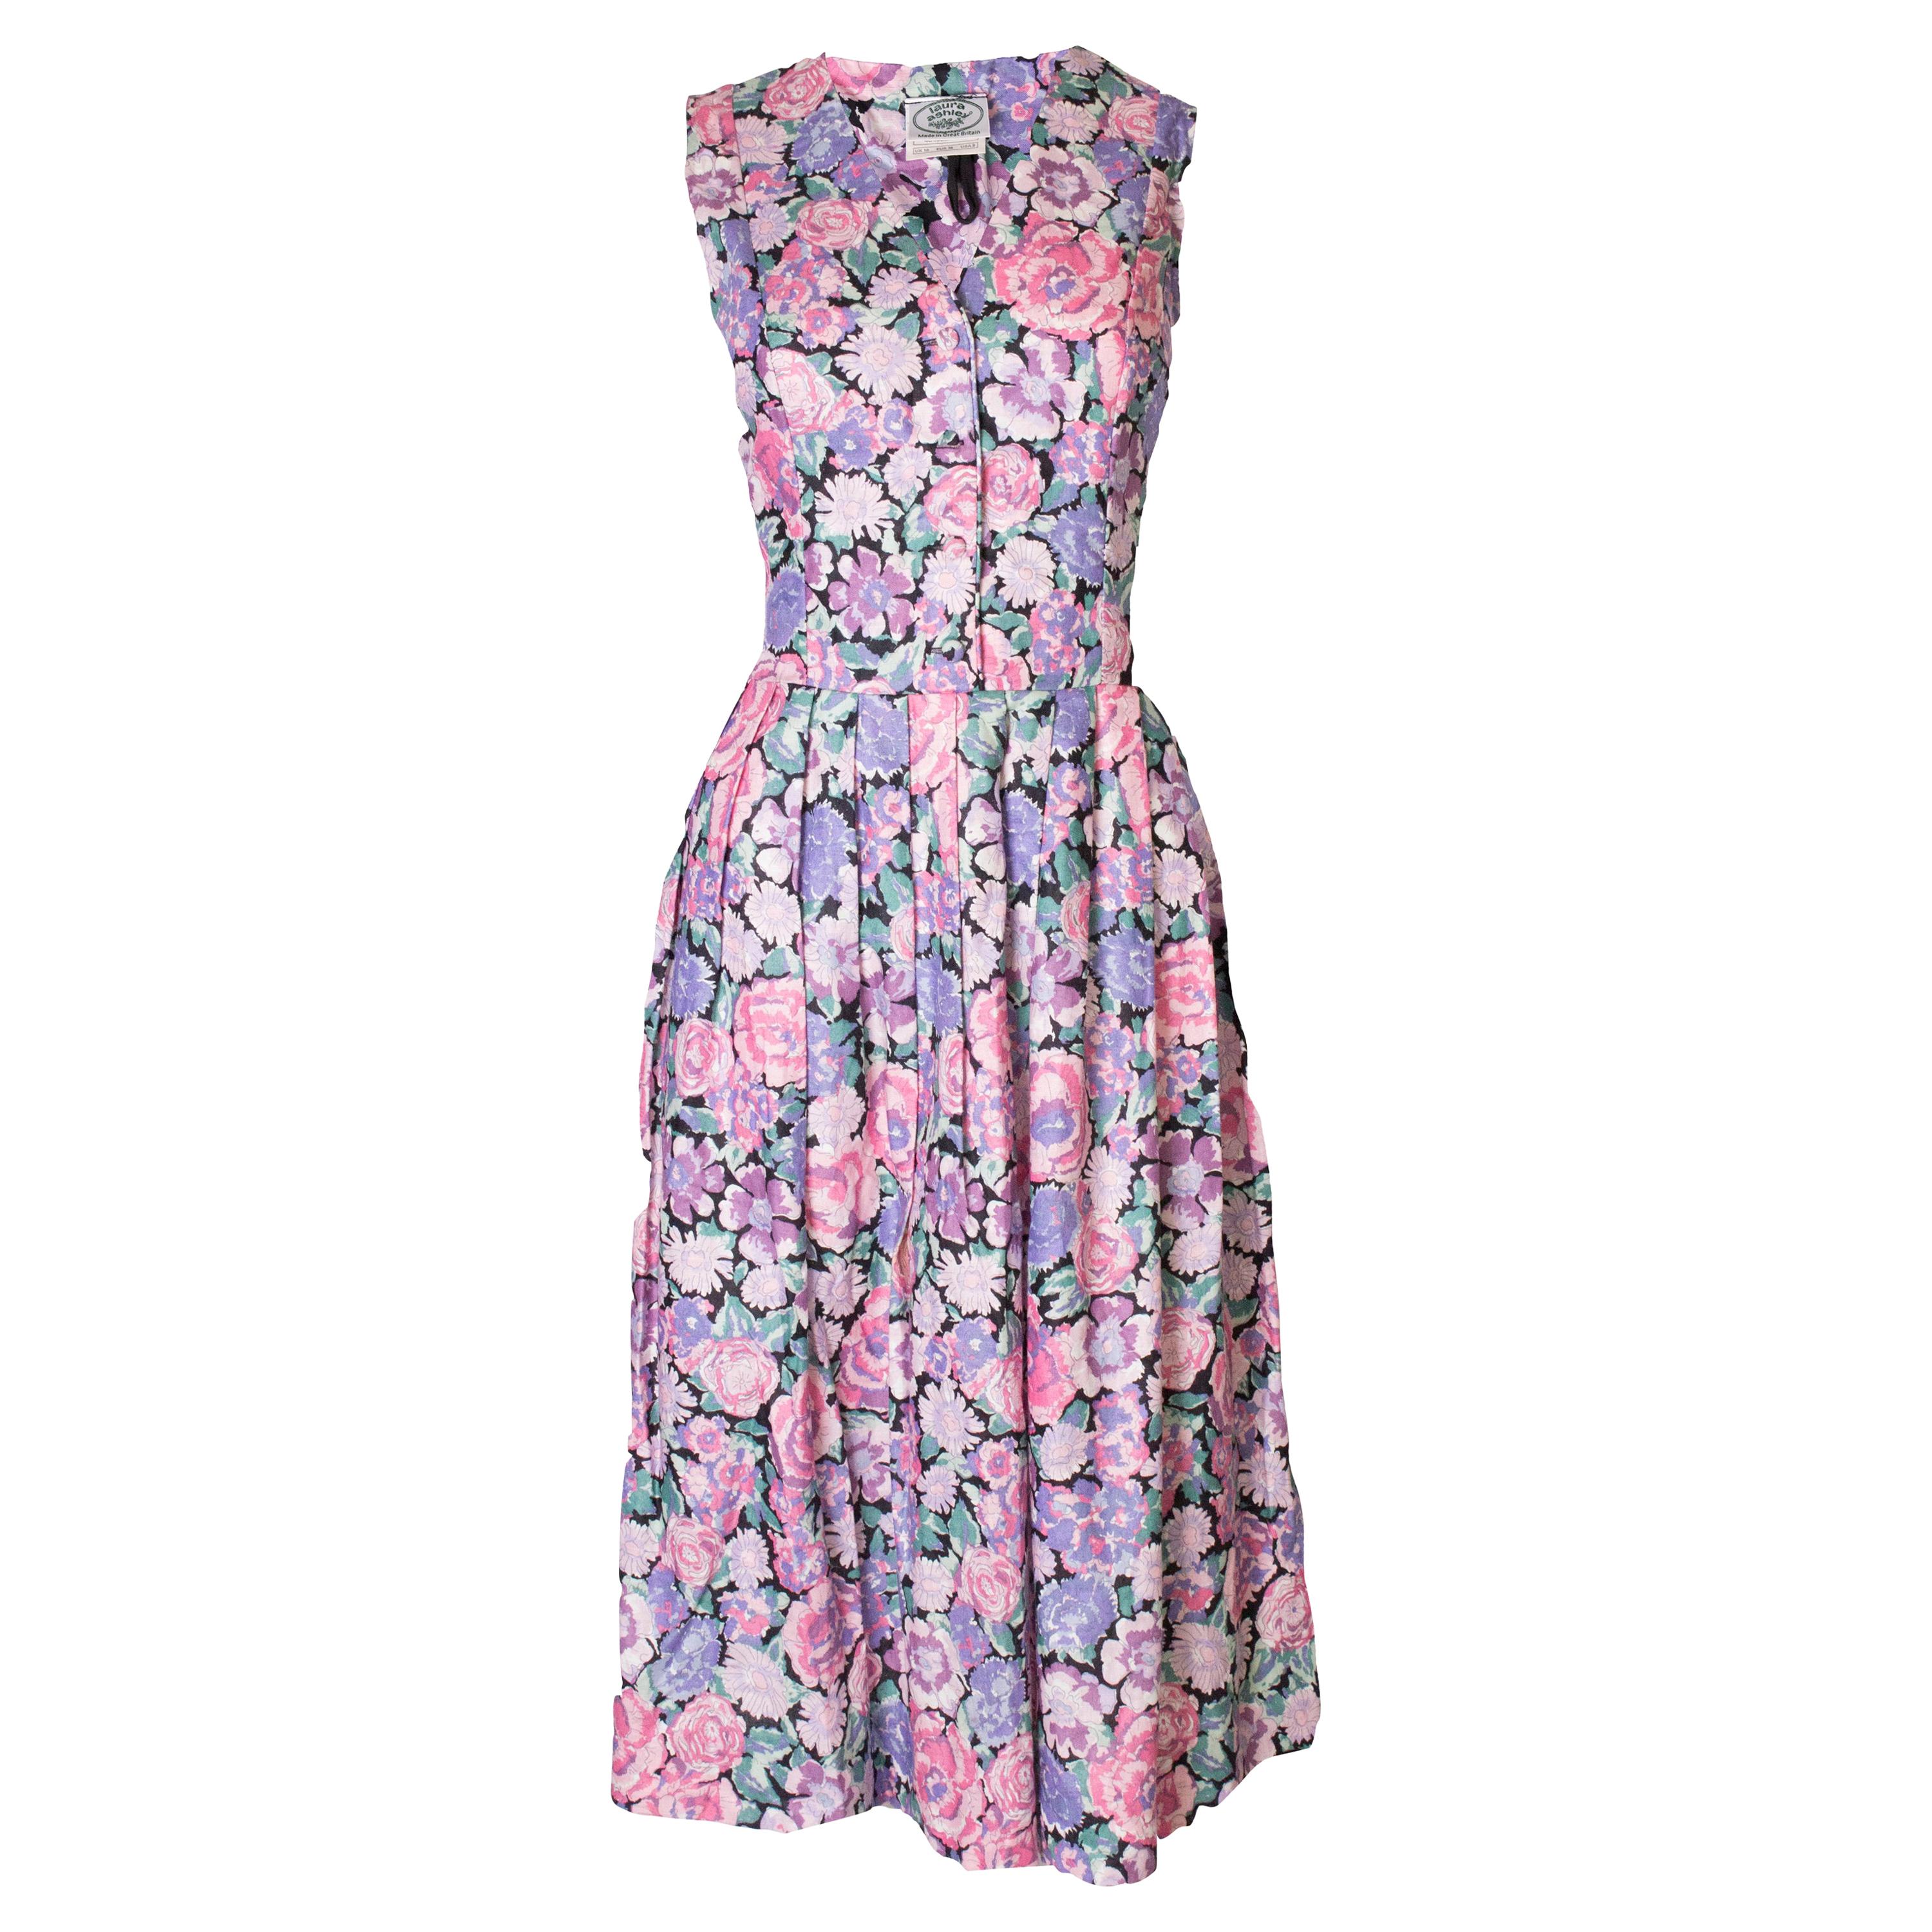 Vintage Laura Ashley Floral Cotton / Linen Dress